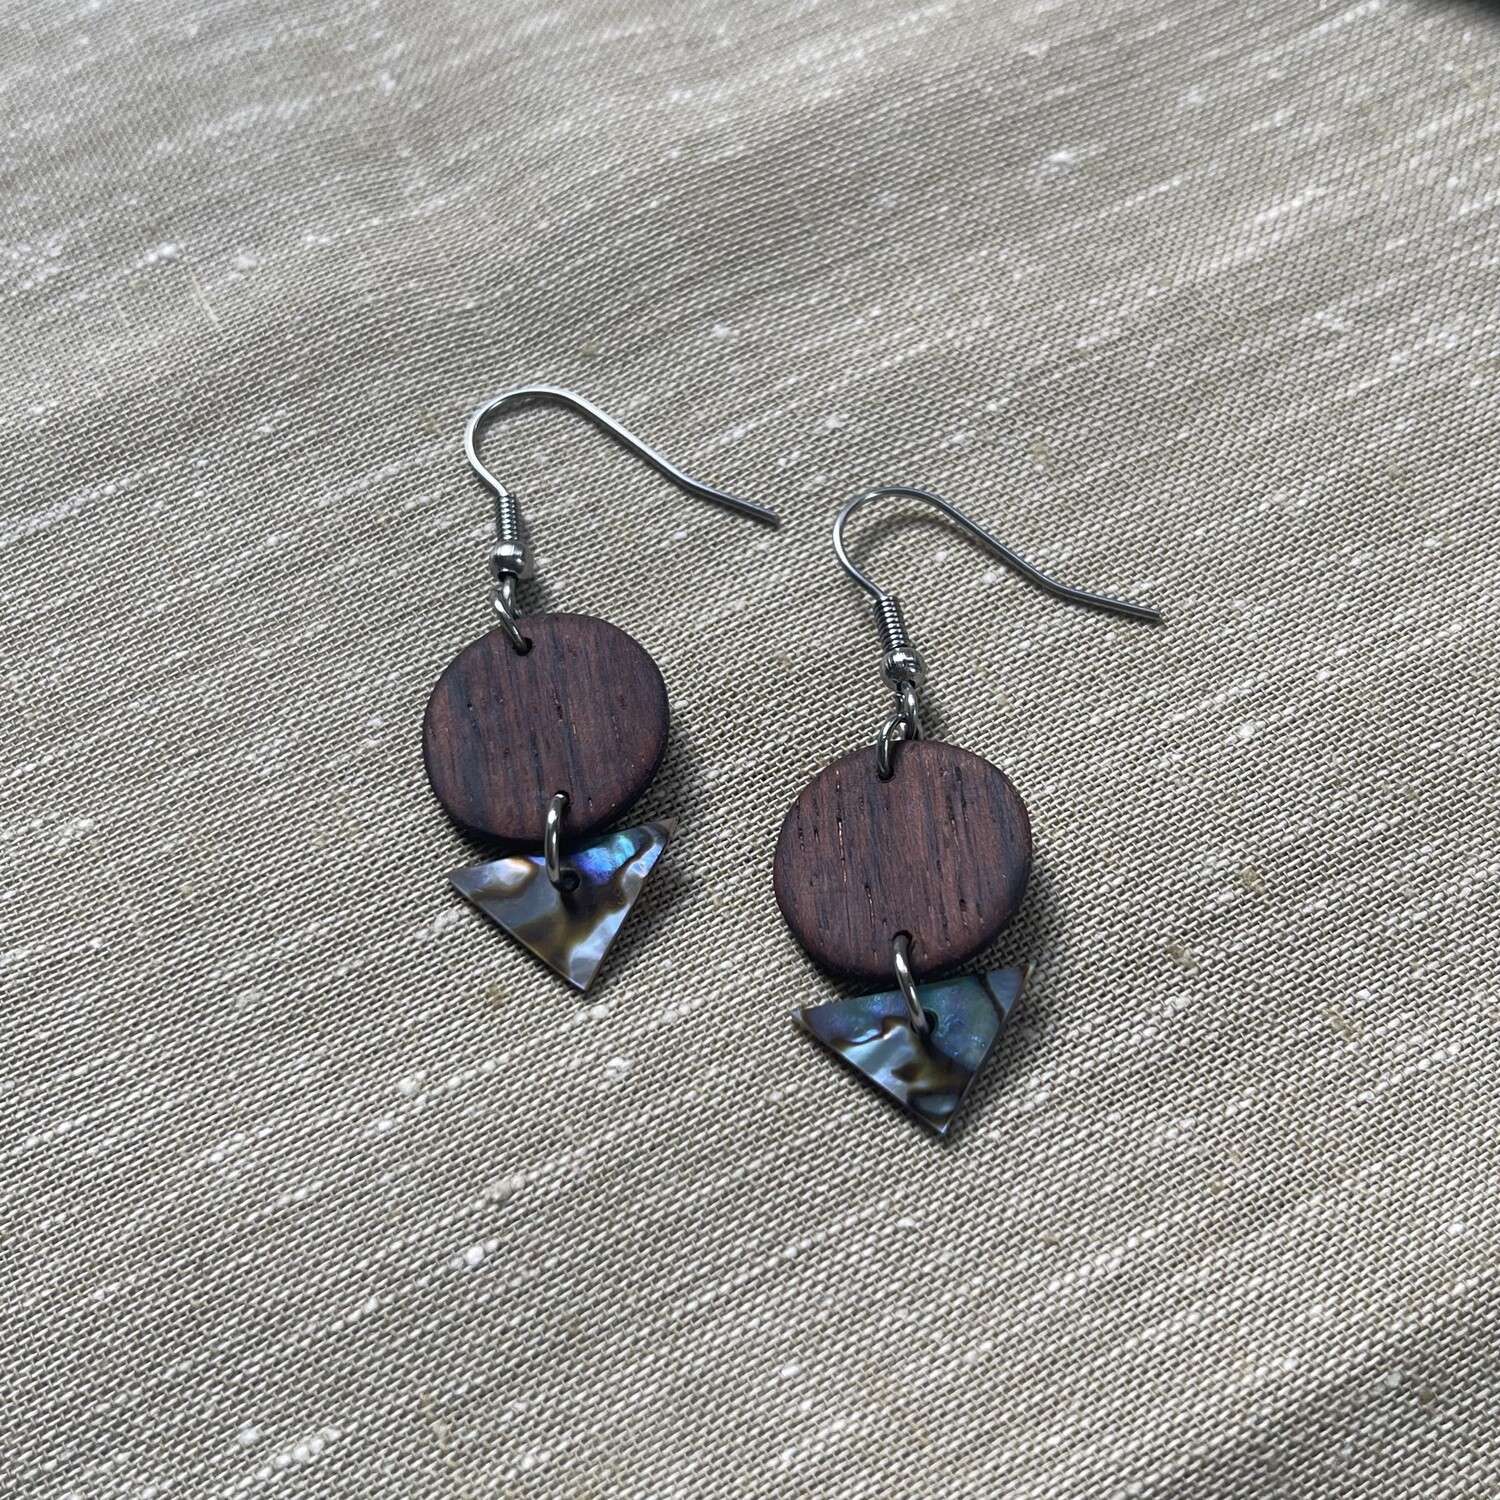 NZ Paua shell / rosewood earrings (7)